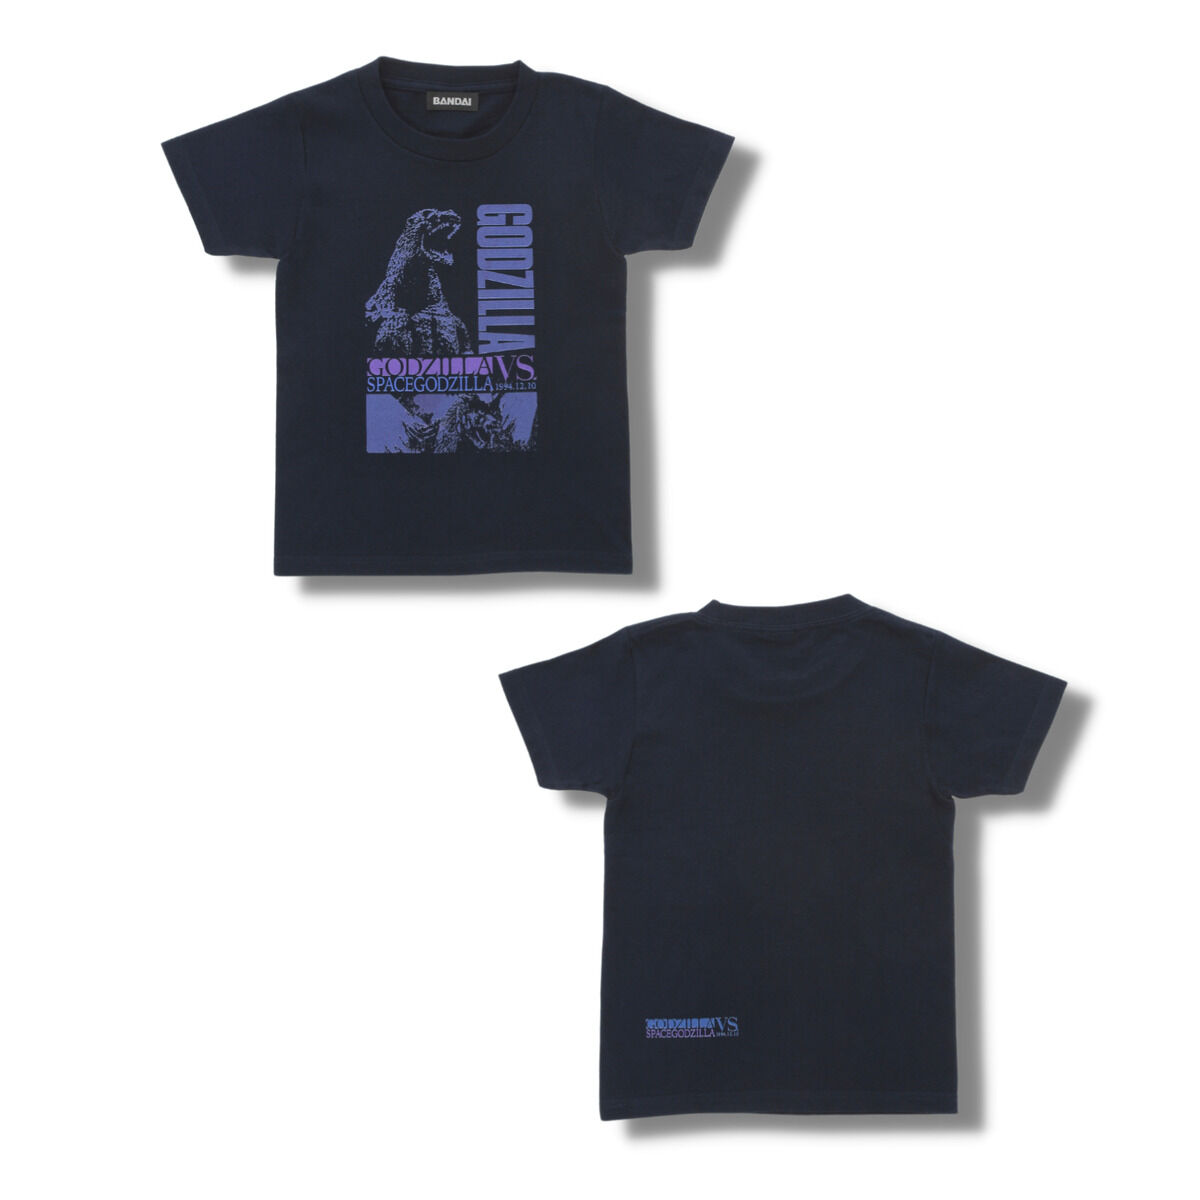 激レア vintage 1998年 GODZILLA Crew限定Tシャツ10000円は厳しいです